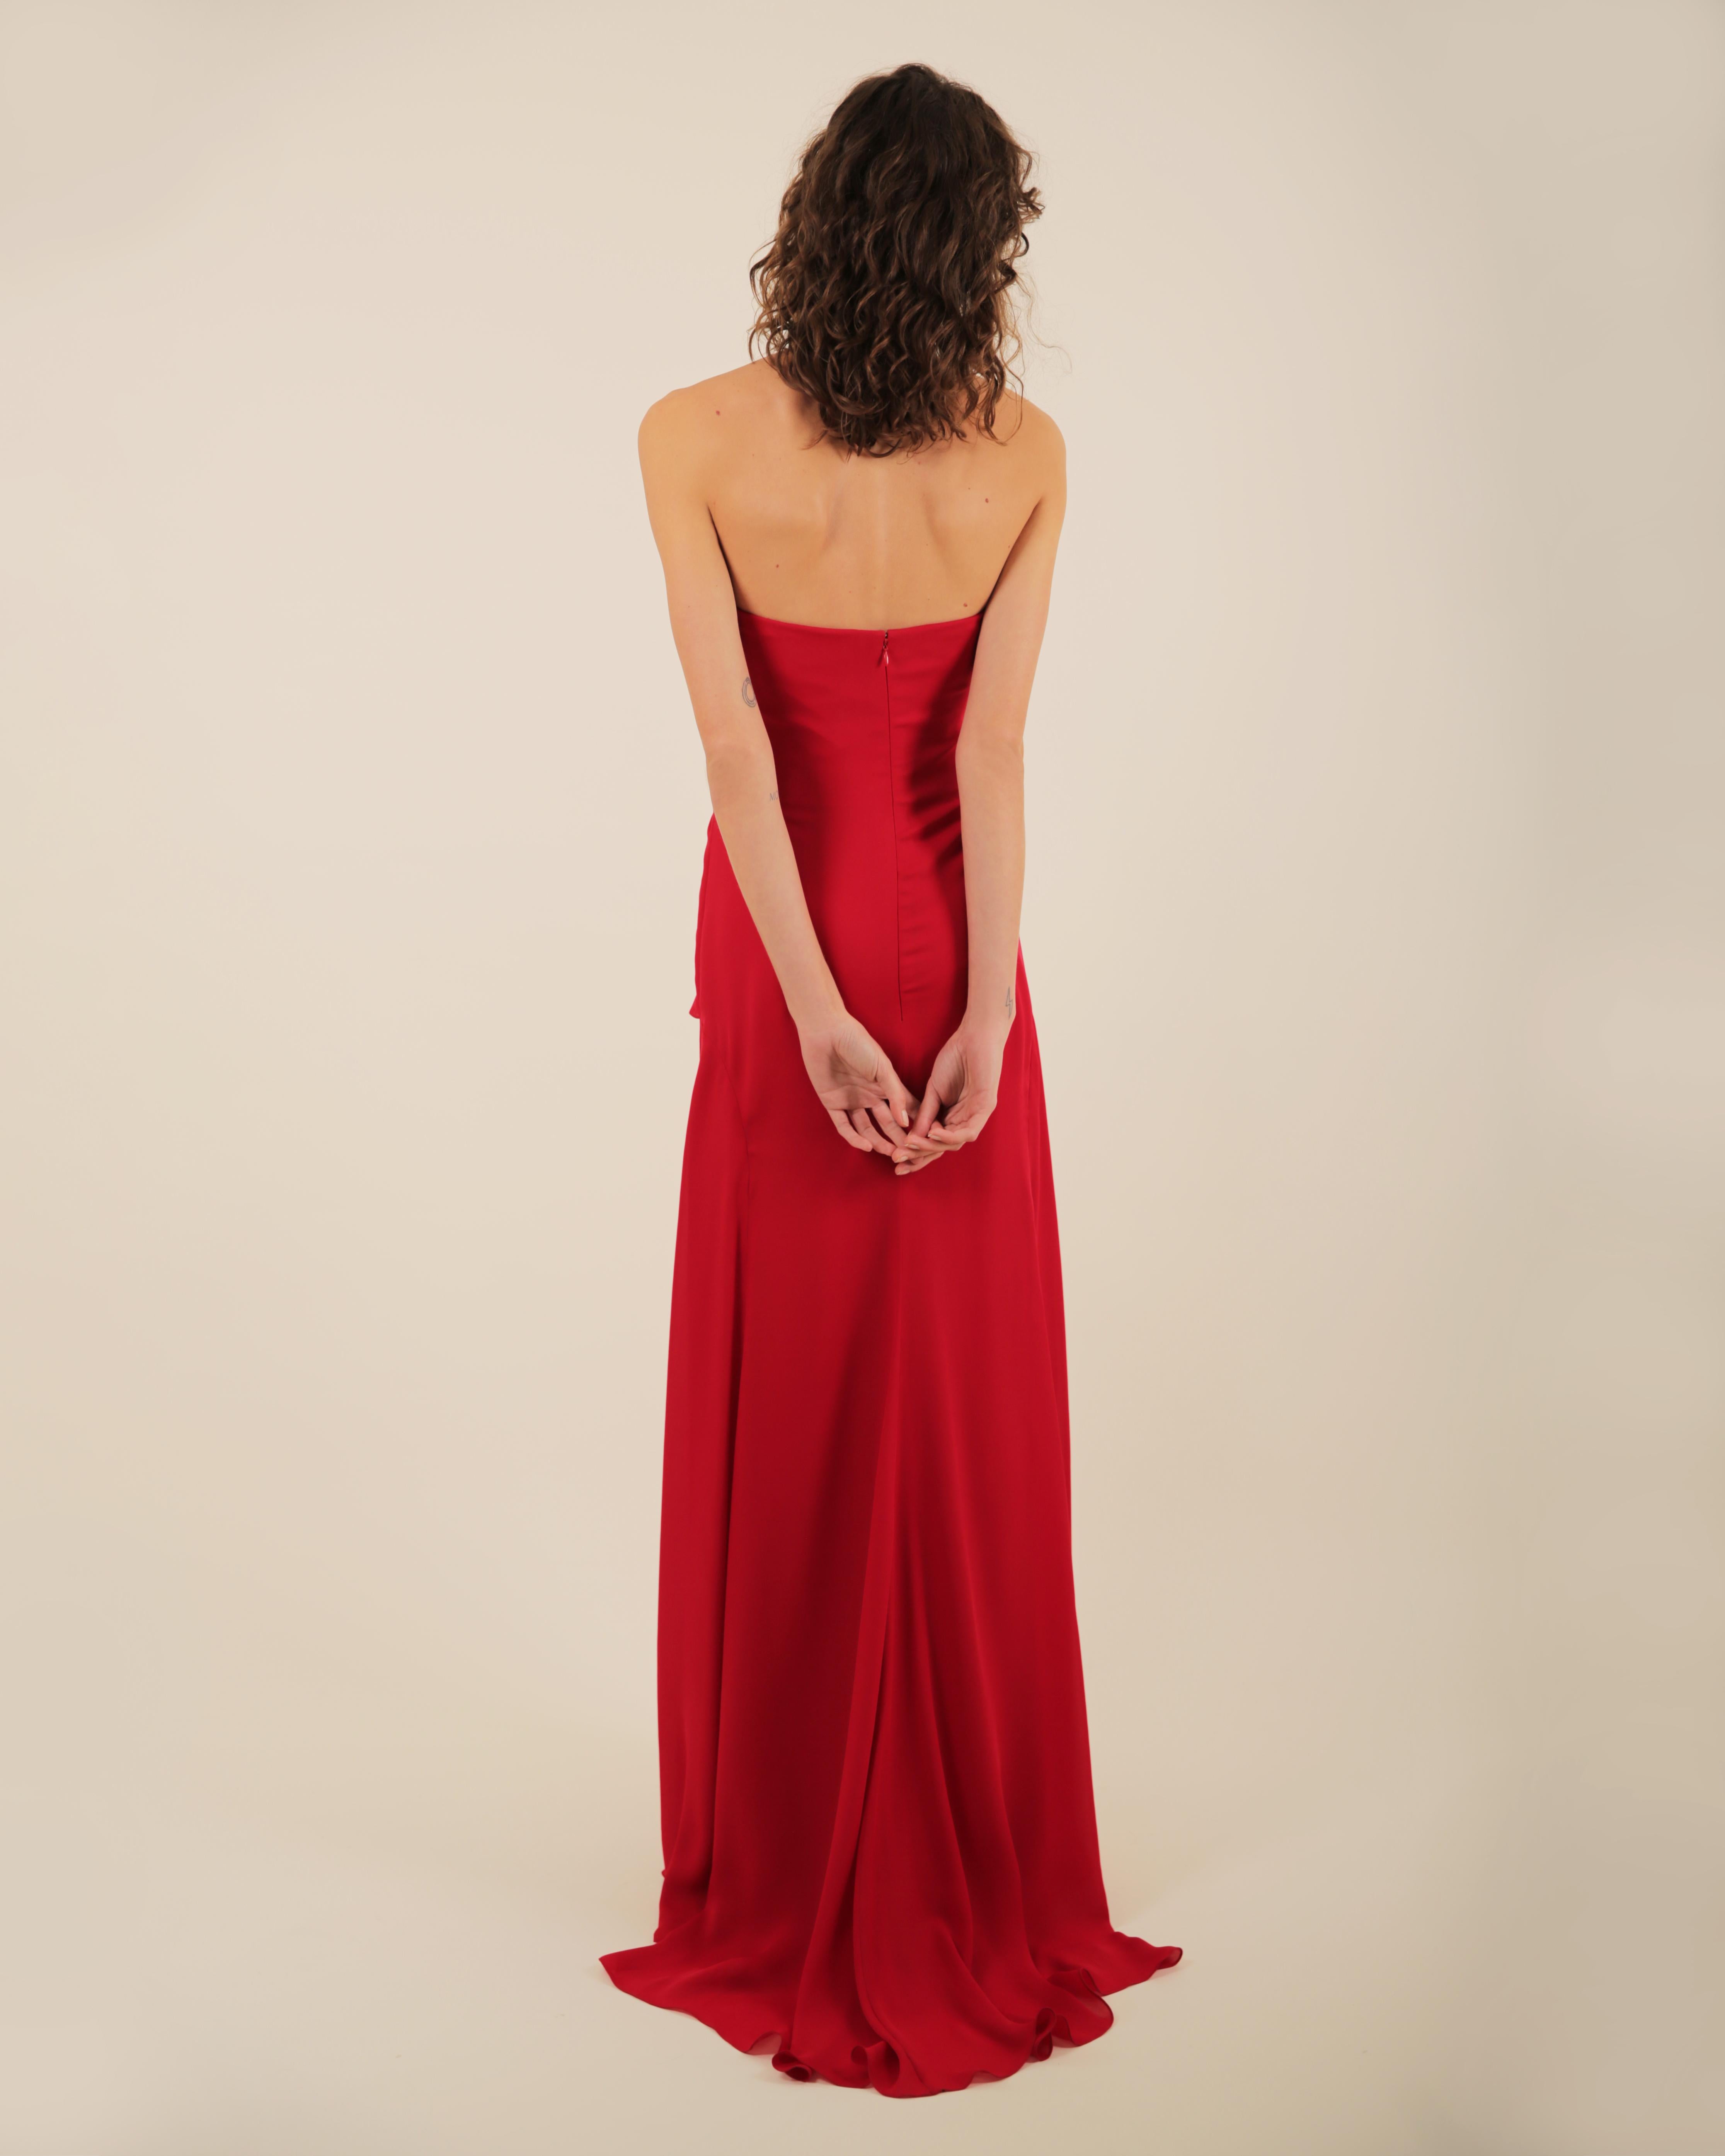 Ralph Lauren SS 2013 strapless bustier red sweetheart neck train silk gown dress 13